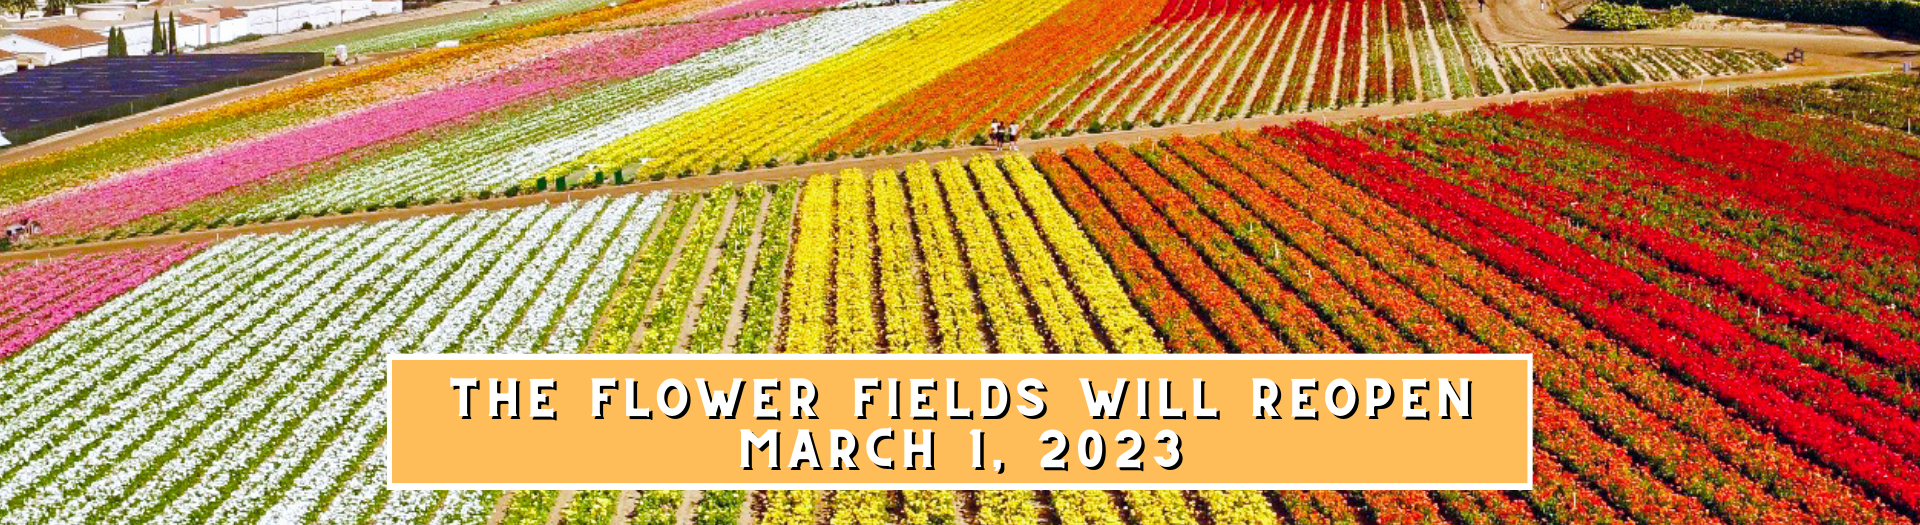 Flower Fields Opening in March!